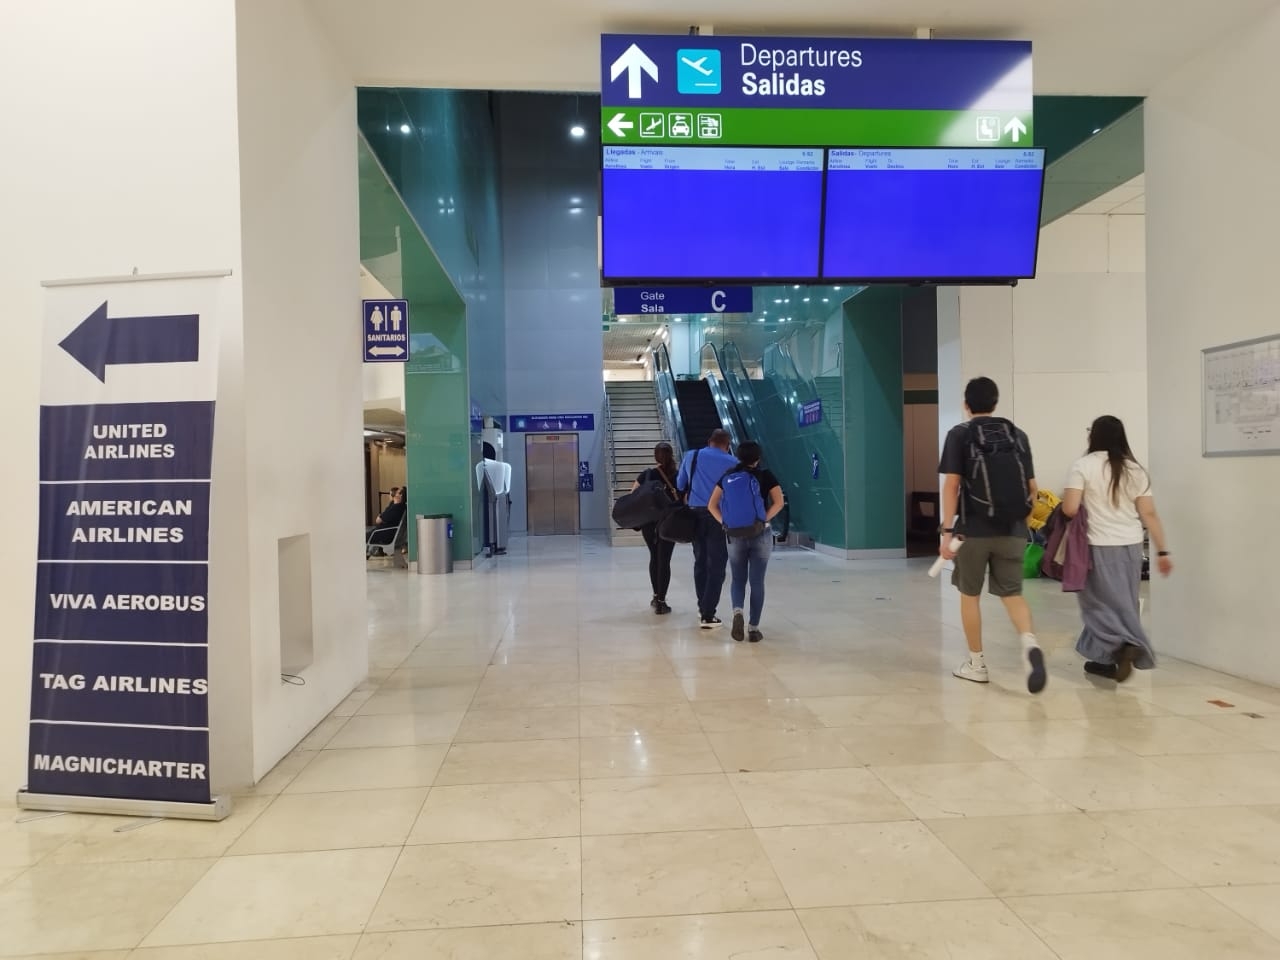 Fallan pantallas del aeropuerto de Mérida; usuarios se quejan por la falta de información